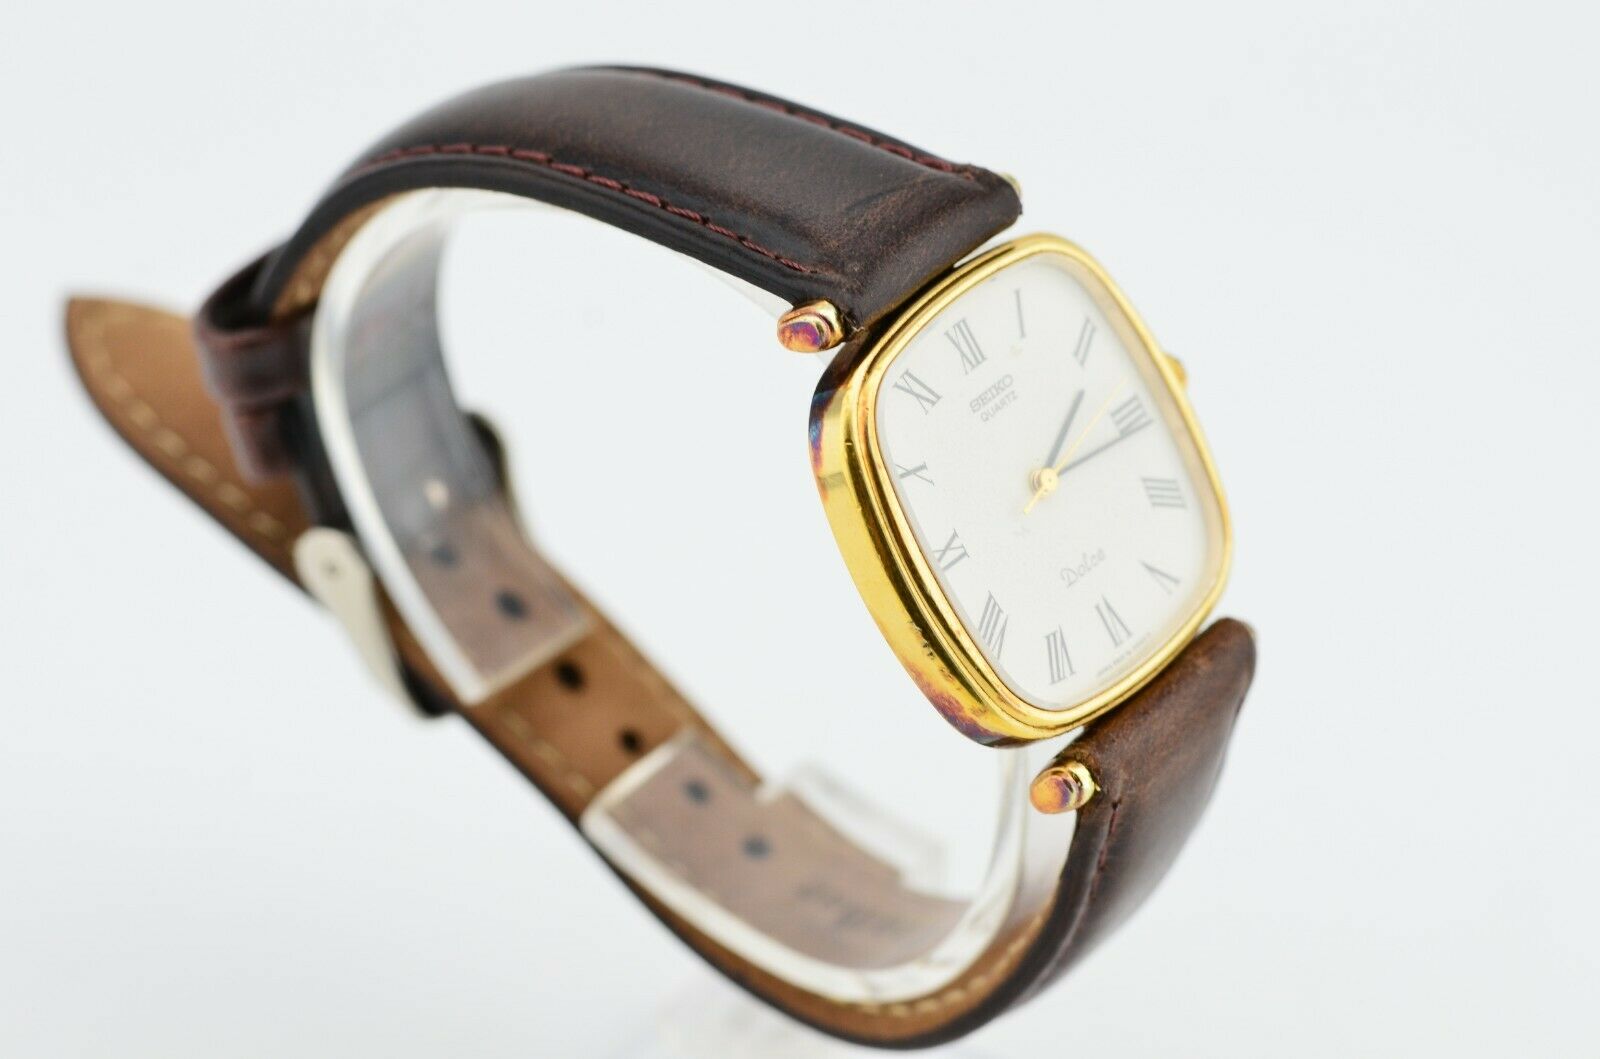 Vintage Seiko Dolce Roman Numerals Quartz Watch 5931-5400 JDM G188/8.4 |  WatchCharts Marketplace